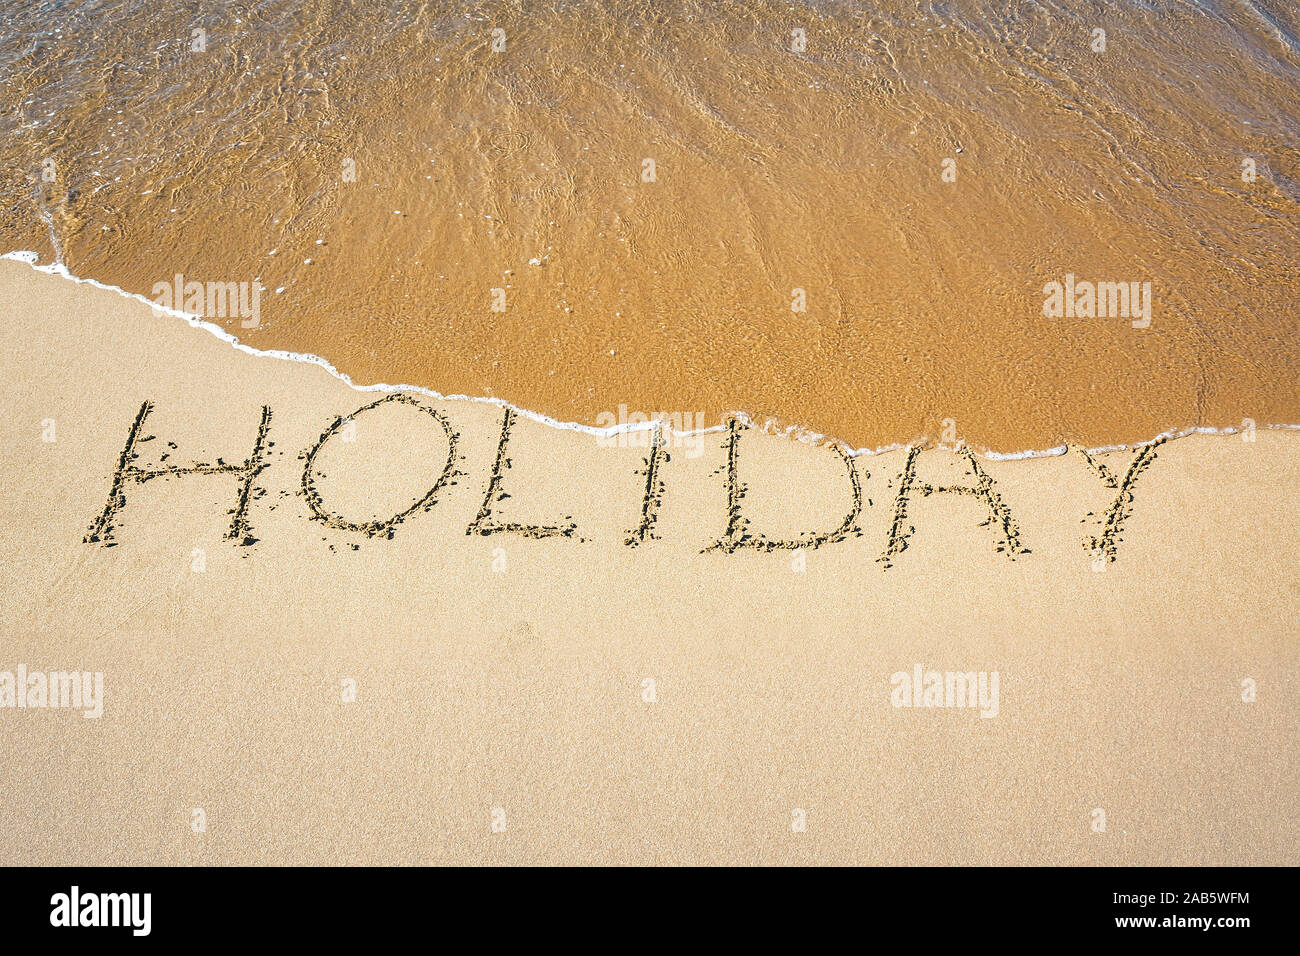 Ein Sandstrand, auf dem 'Holiday' geschrieben steht. Stock Photo